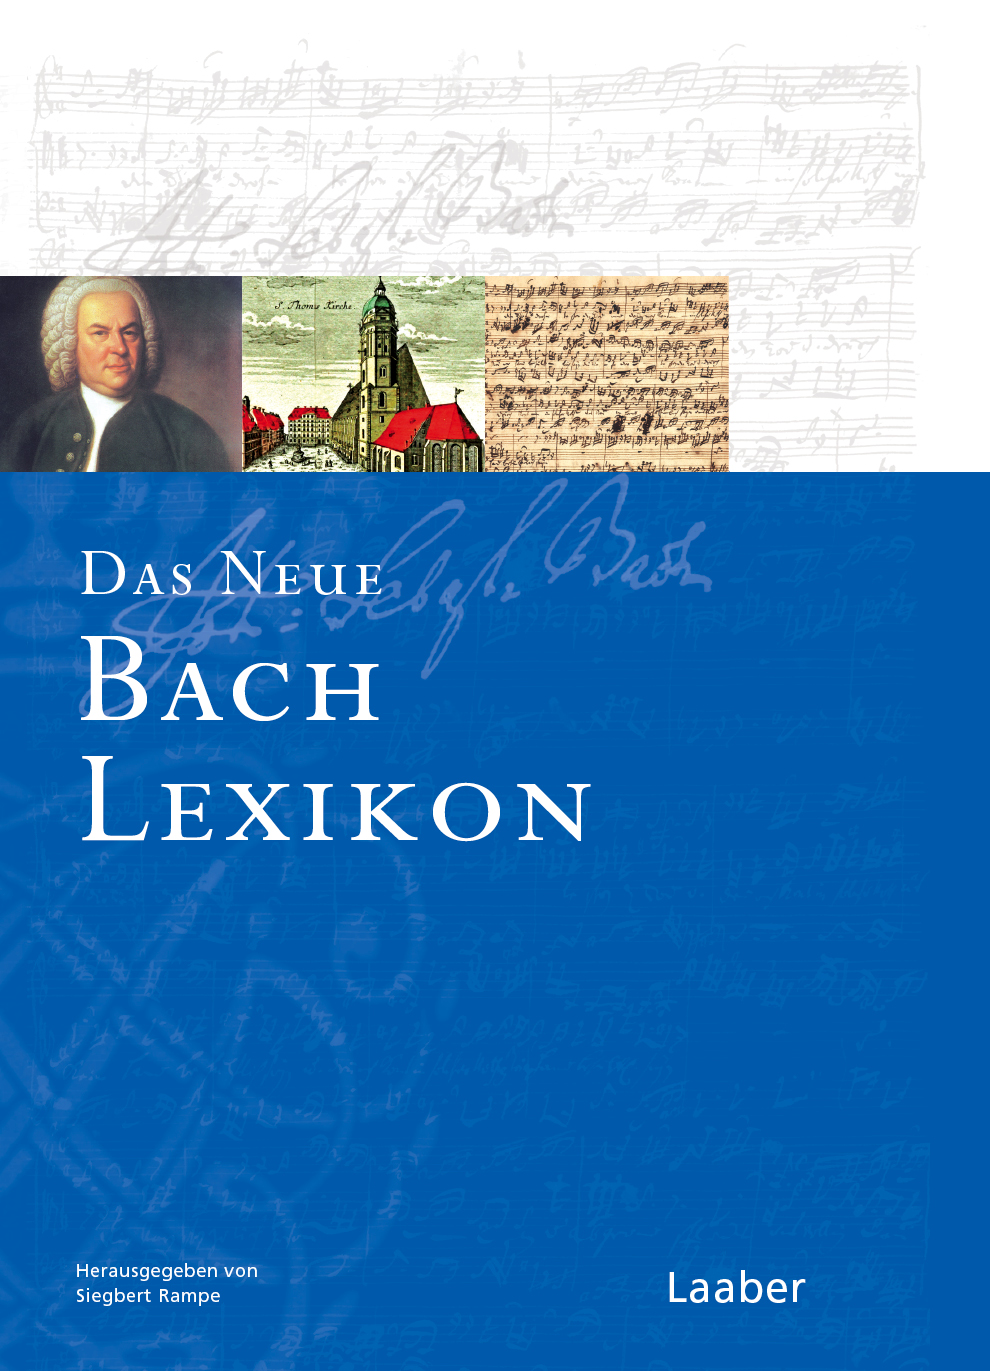 Das neue Bach-Lexikon